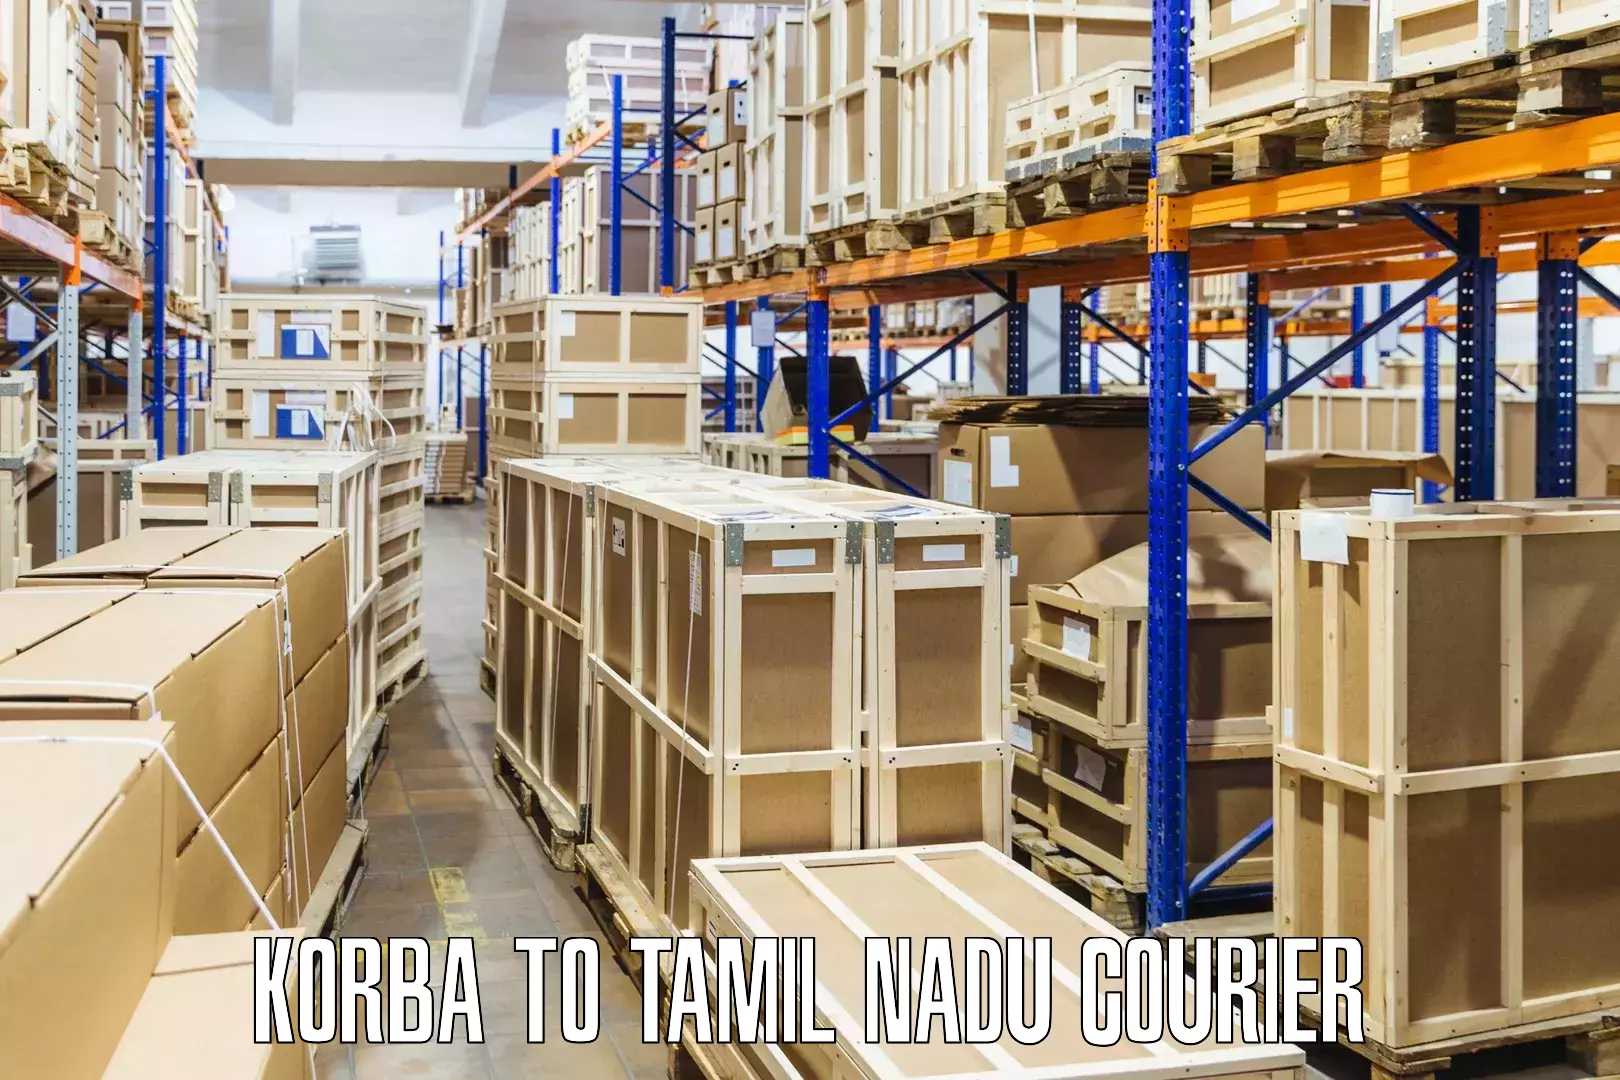 Trackable shipping service Korba to Valparai